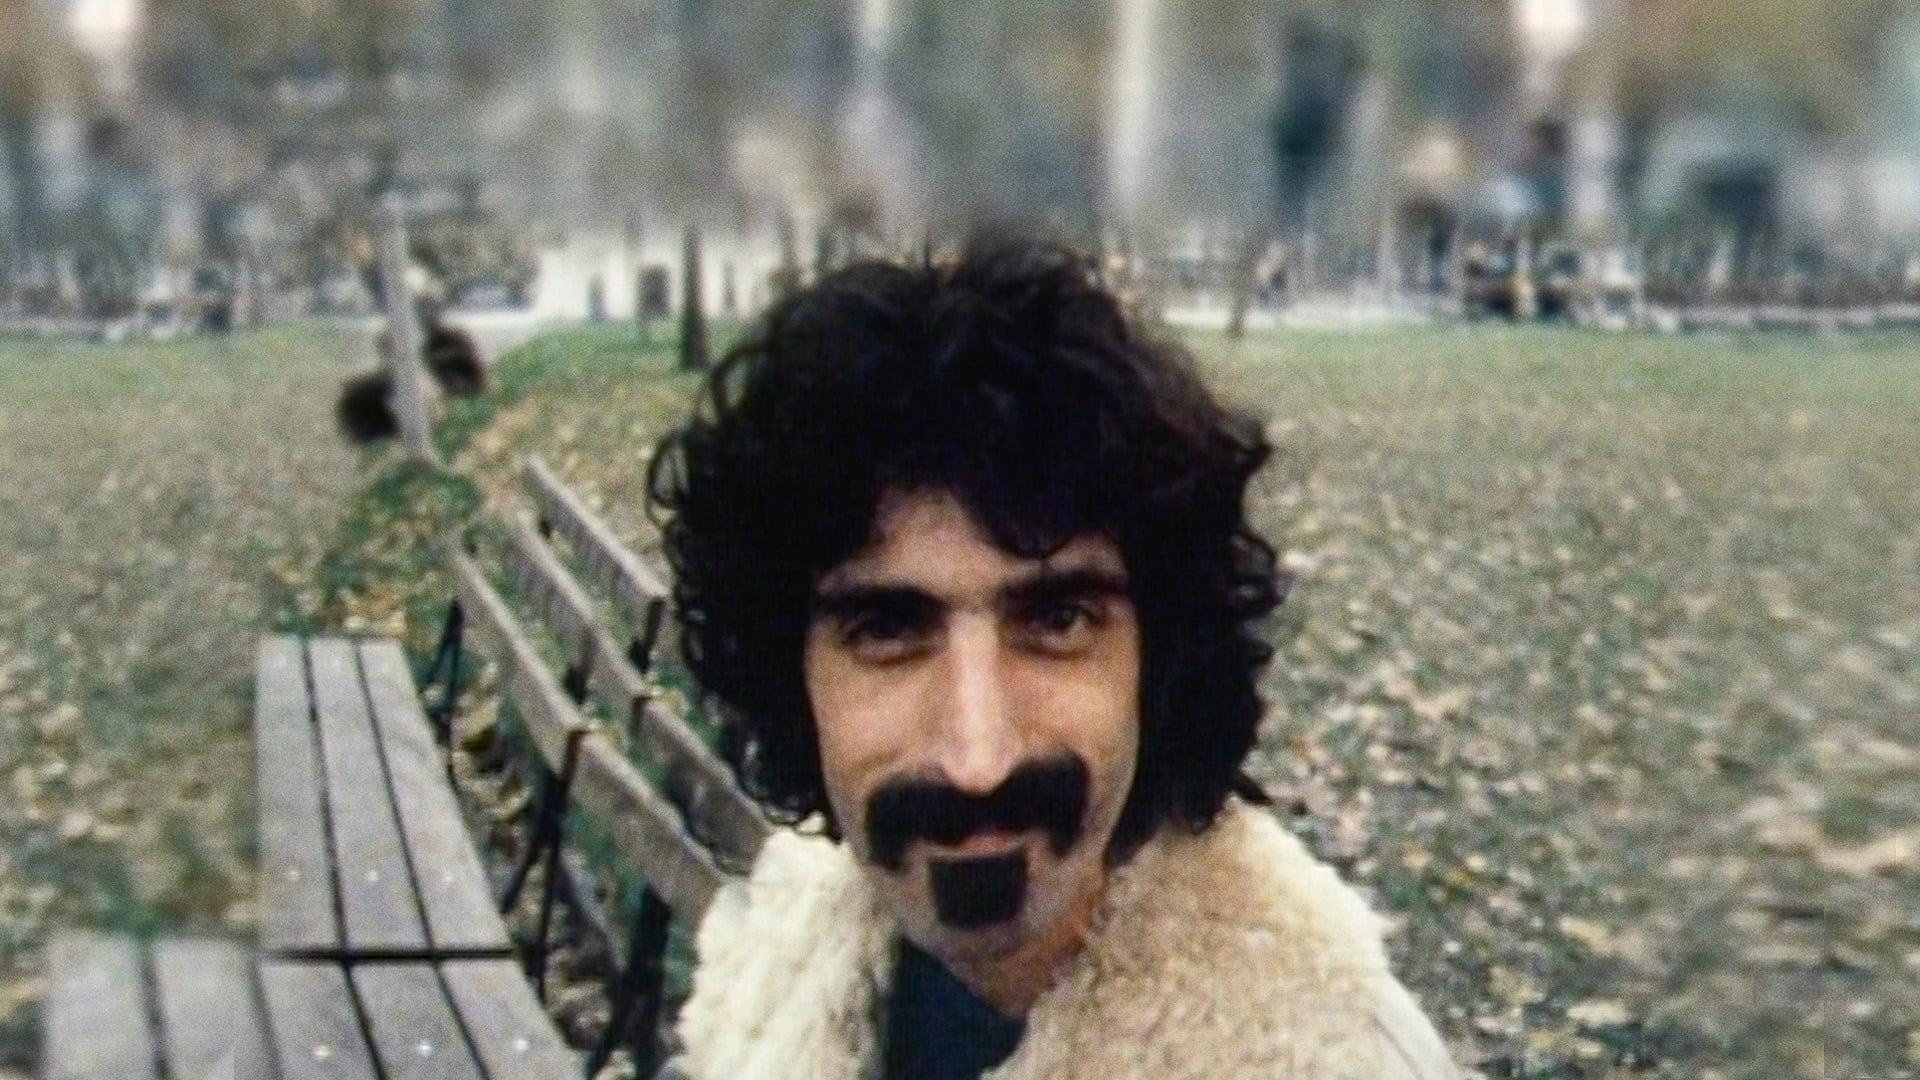 Zappa backdrop